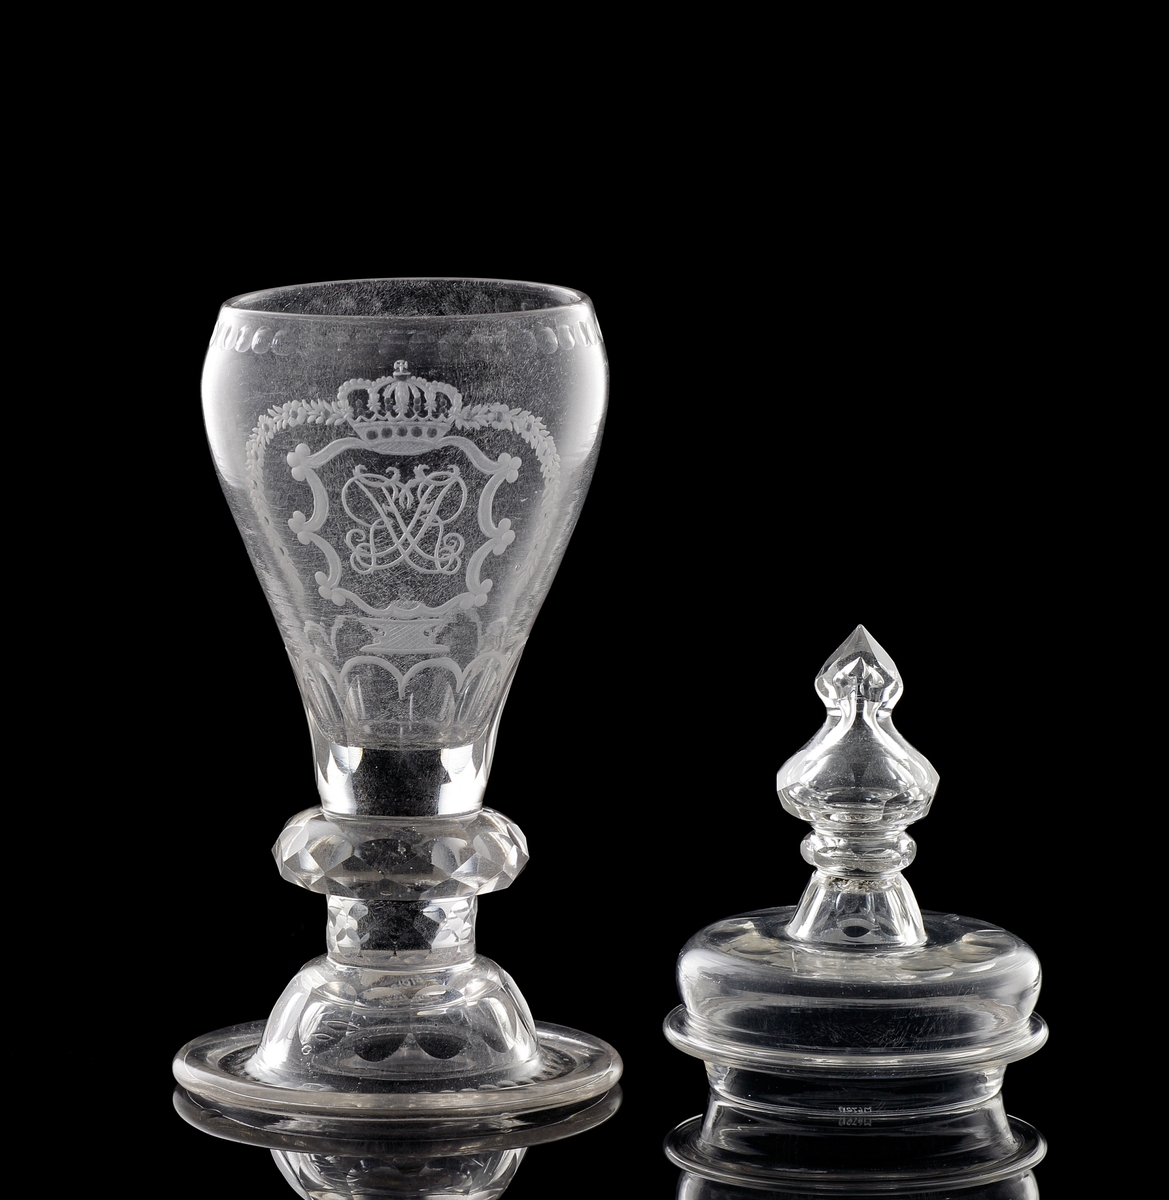 Pokal av glas, med lock. 
Slipat och graverat mönster med kungligt spegelmonogram: "FR"* i kartusch under krona.

*"FR" (Fredericus Rex= Fredrik I av Sverige, reg. 1720-1751).